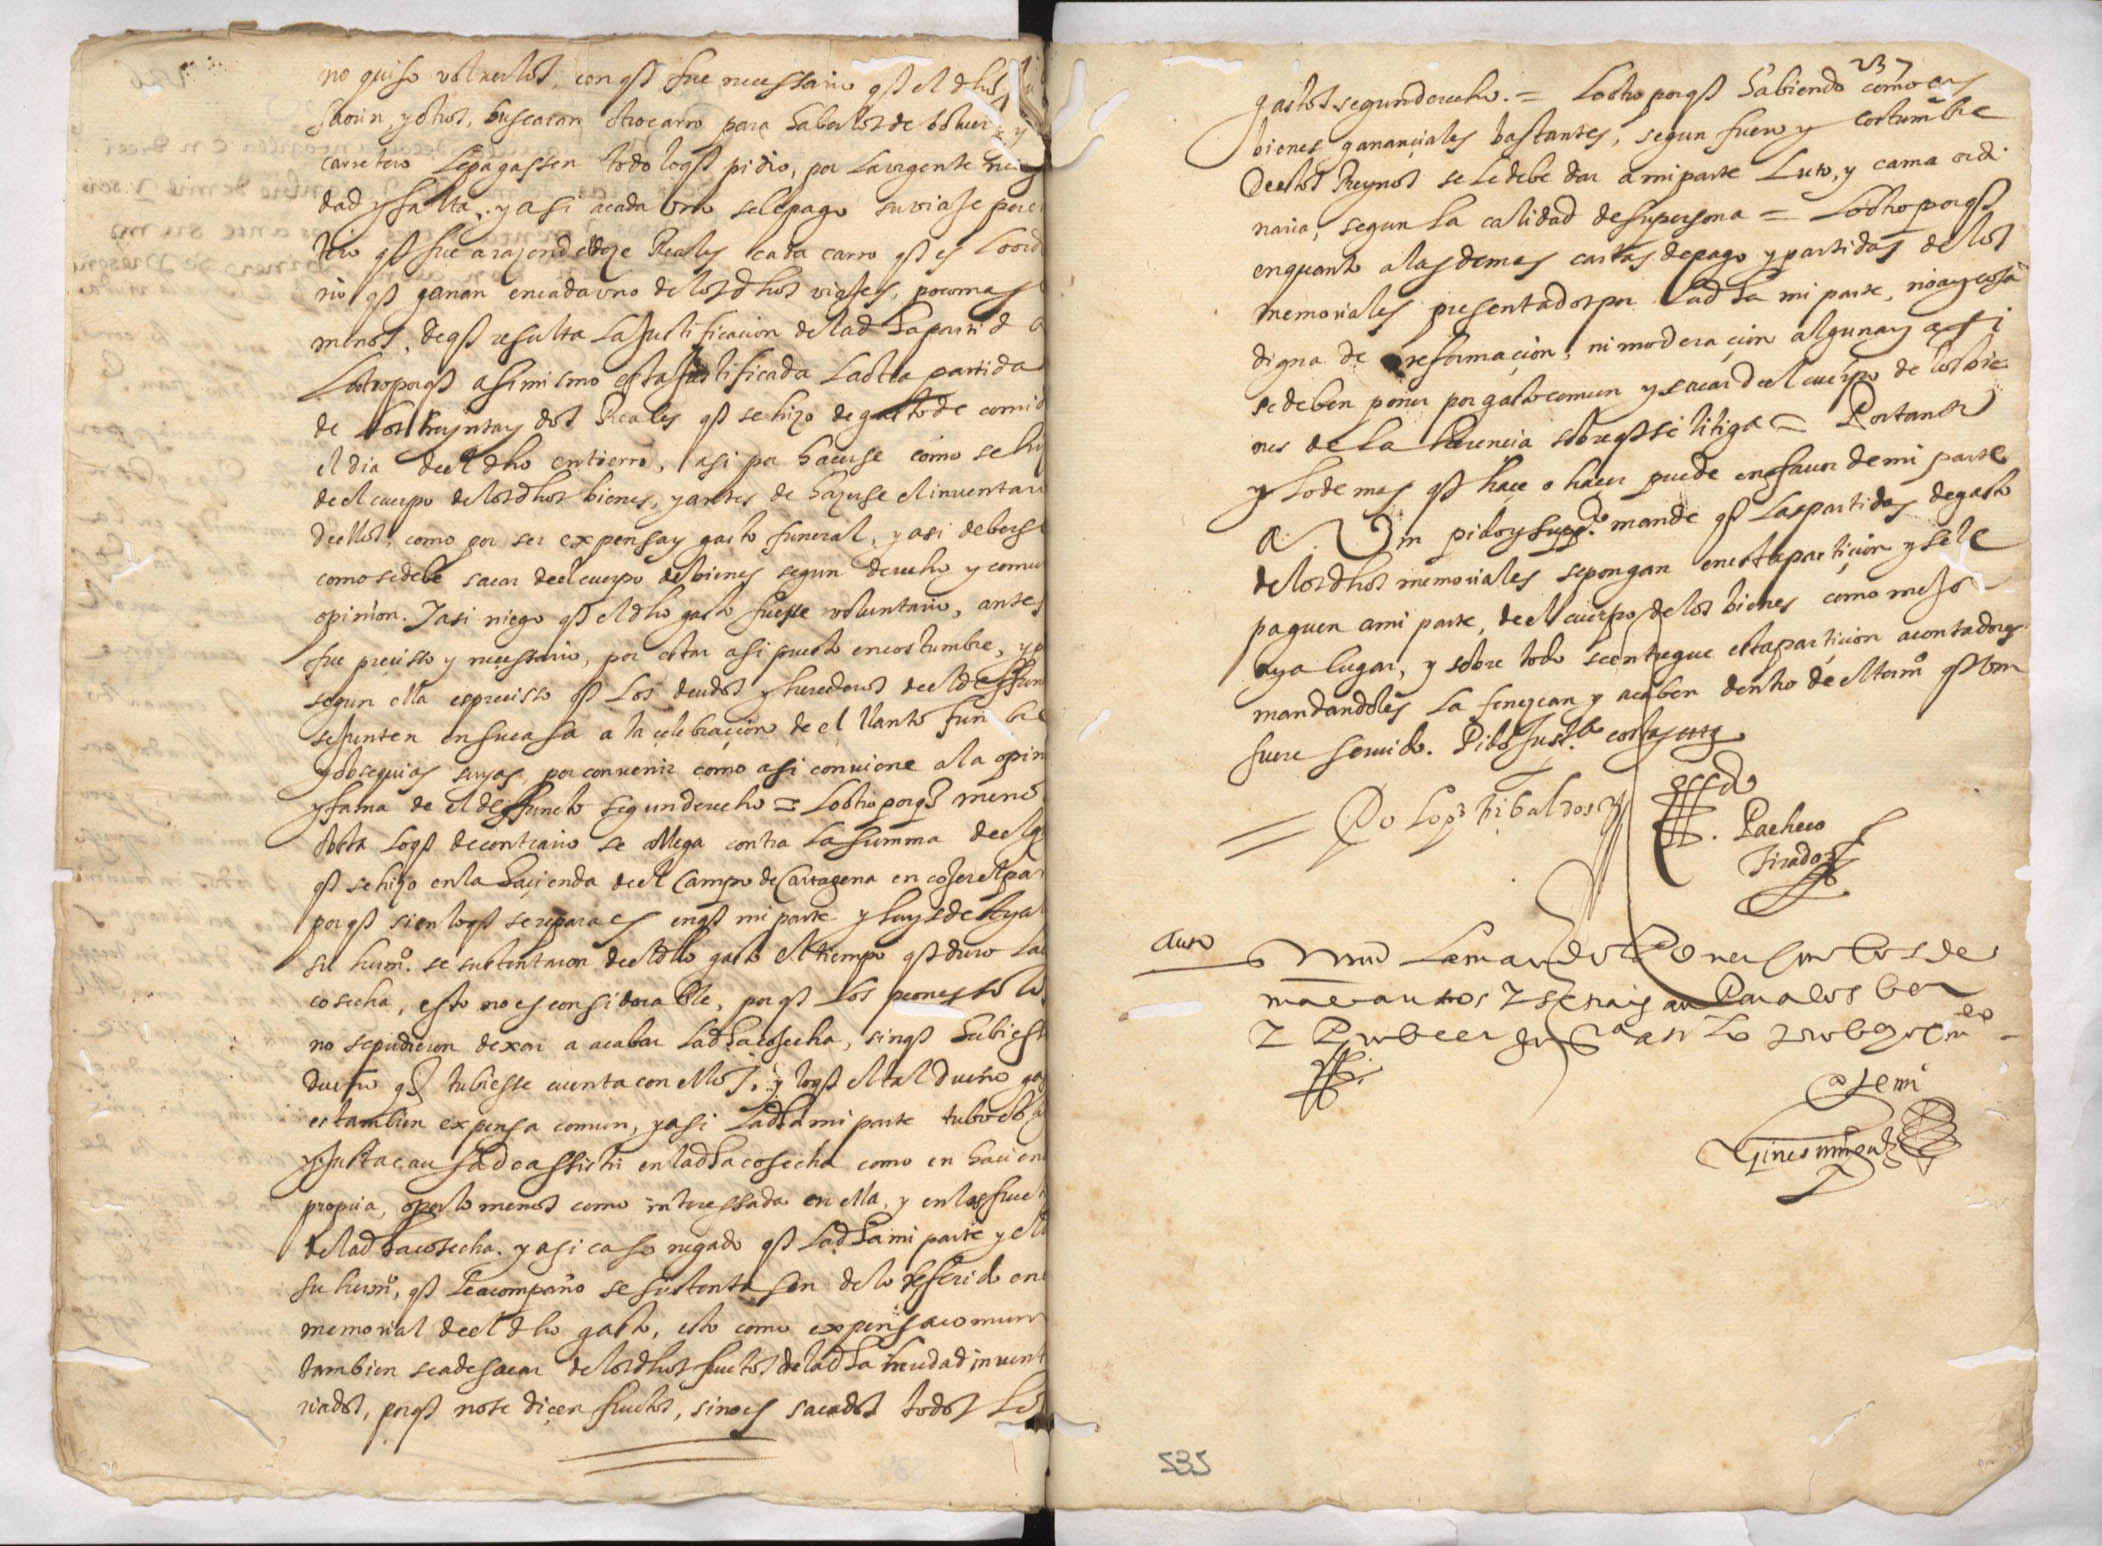 Registro de inventarios y particiones de bienes, Alcantarilla. Años 1633-1707.